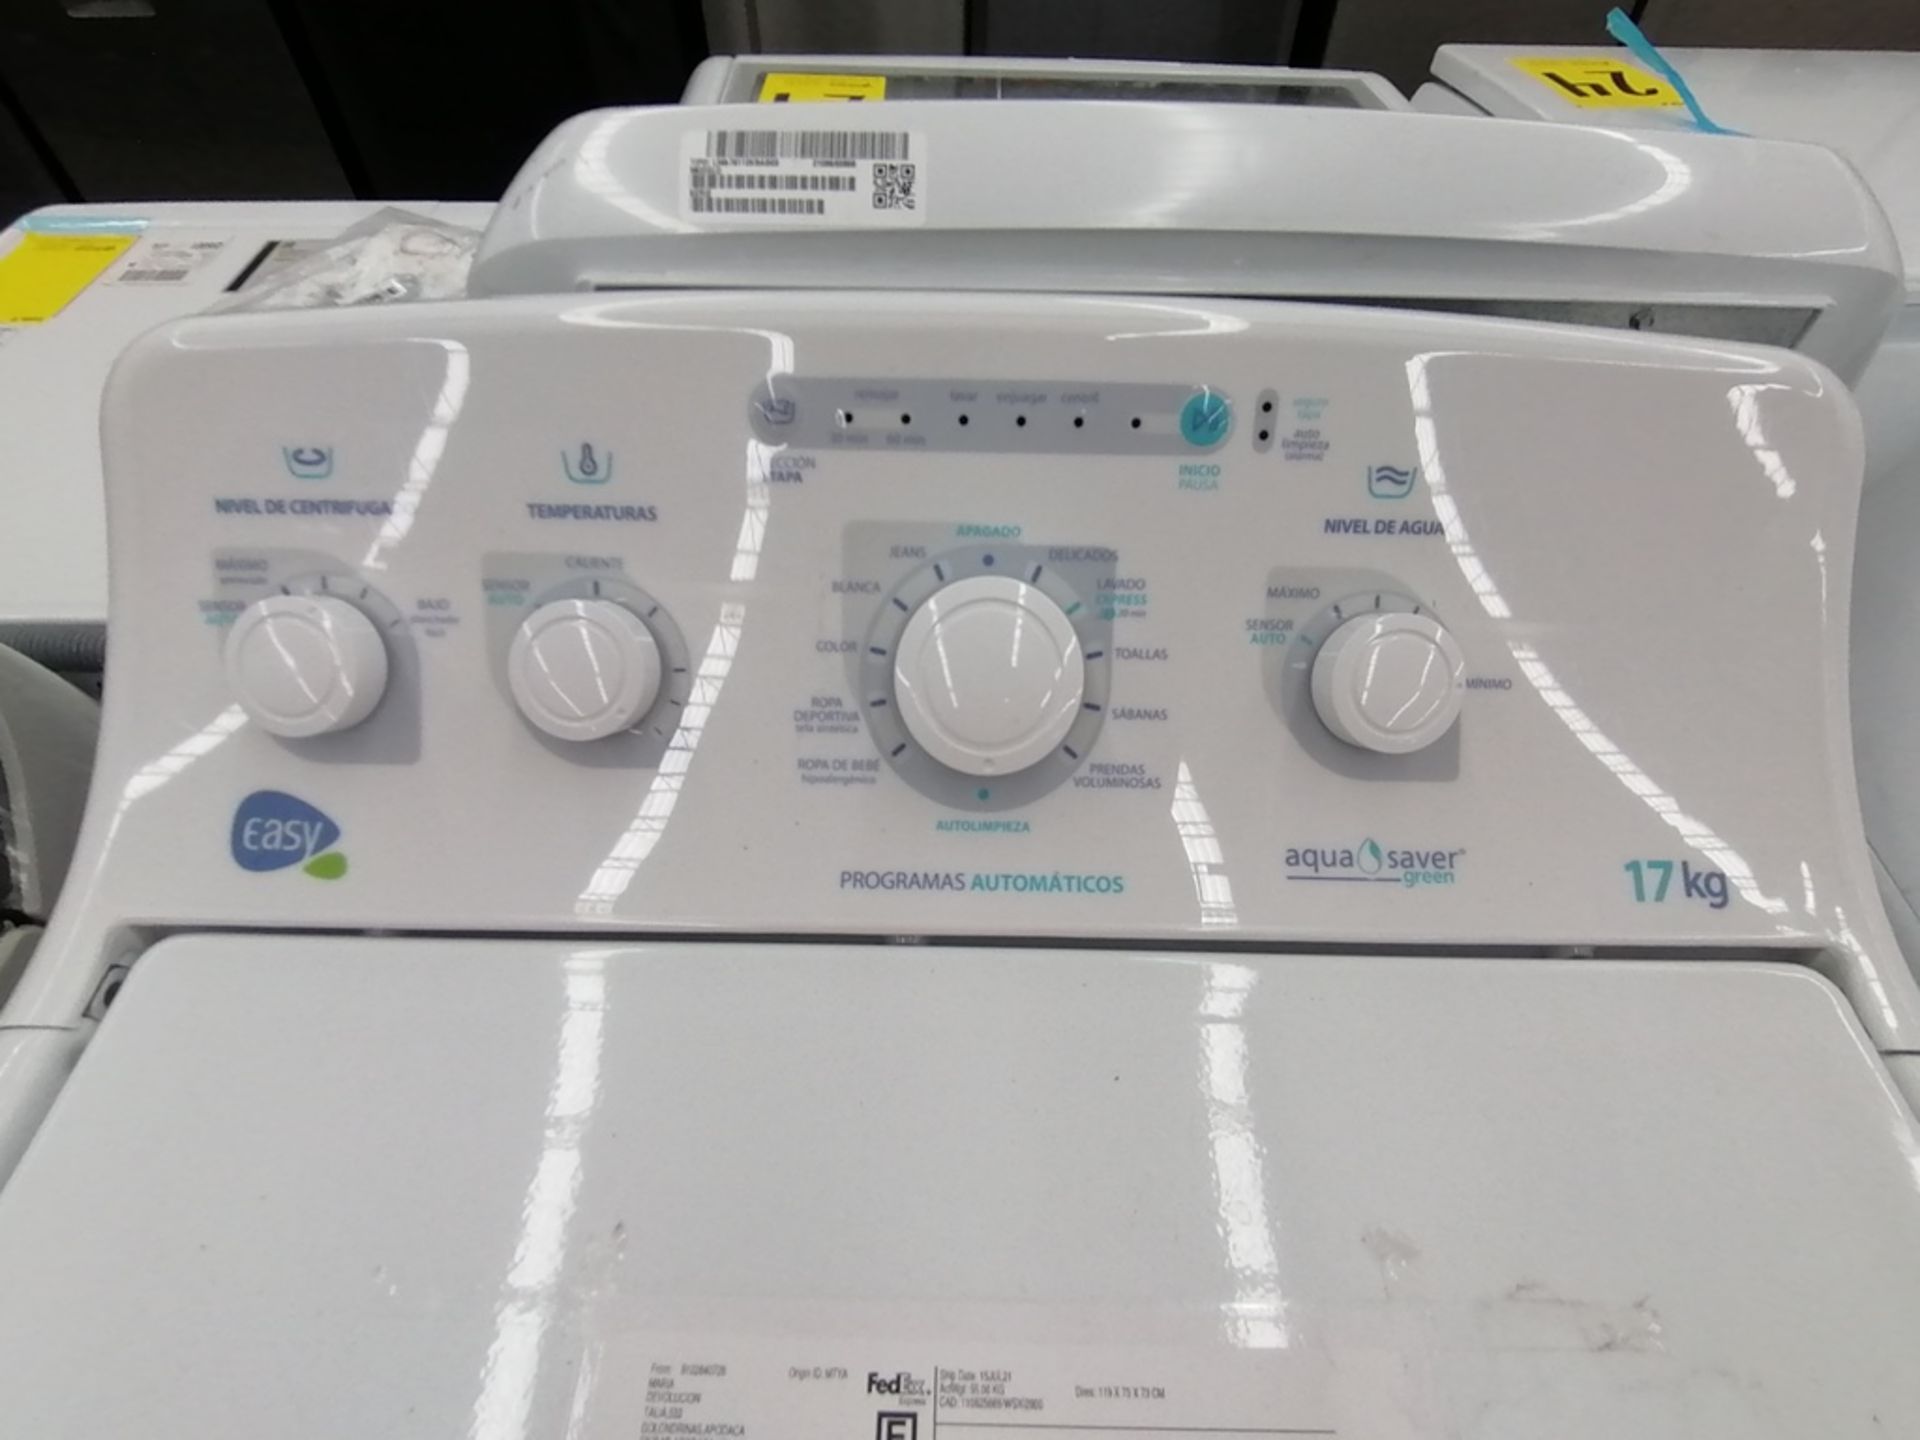 Lote de 3 lavadoras contiene: 1 Lavadora de 17KG, Marca Easy, Modelo LEA77114CBAB03, Serie 2105S522 - Image 13 of 30